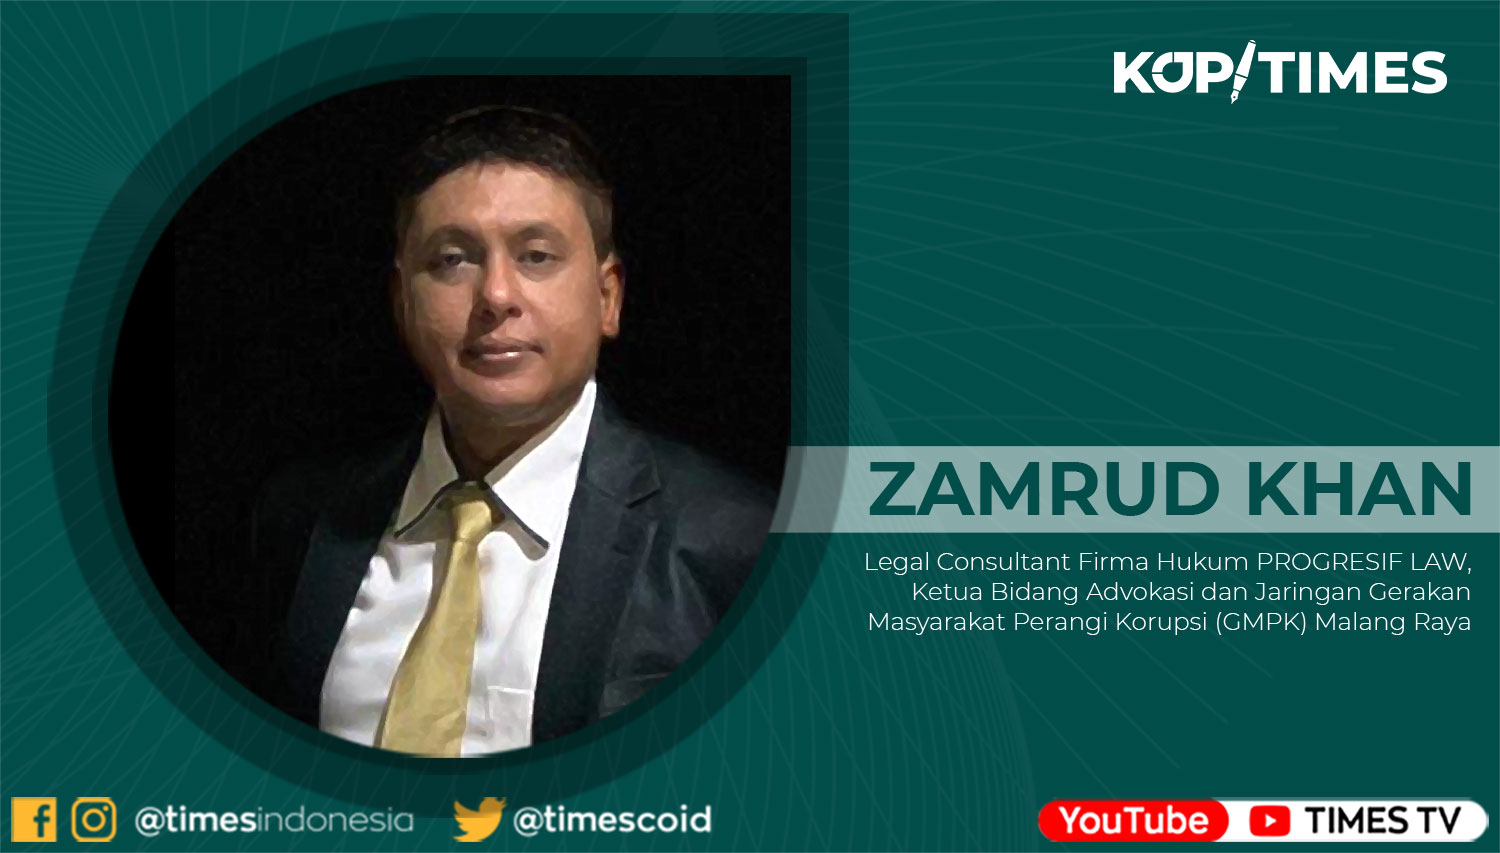 Zamrud Khan, Legal Consultant Firma Hukum PROGRESIF LAW, Ketua Bidang Advokasi dan Jaringan Gerakan Masyarakat Perangi Korupsi (GMPK) Malang Raya.